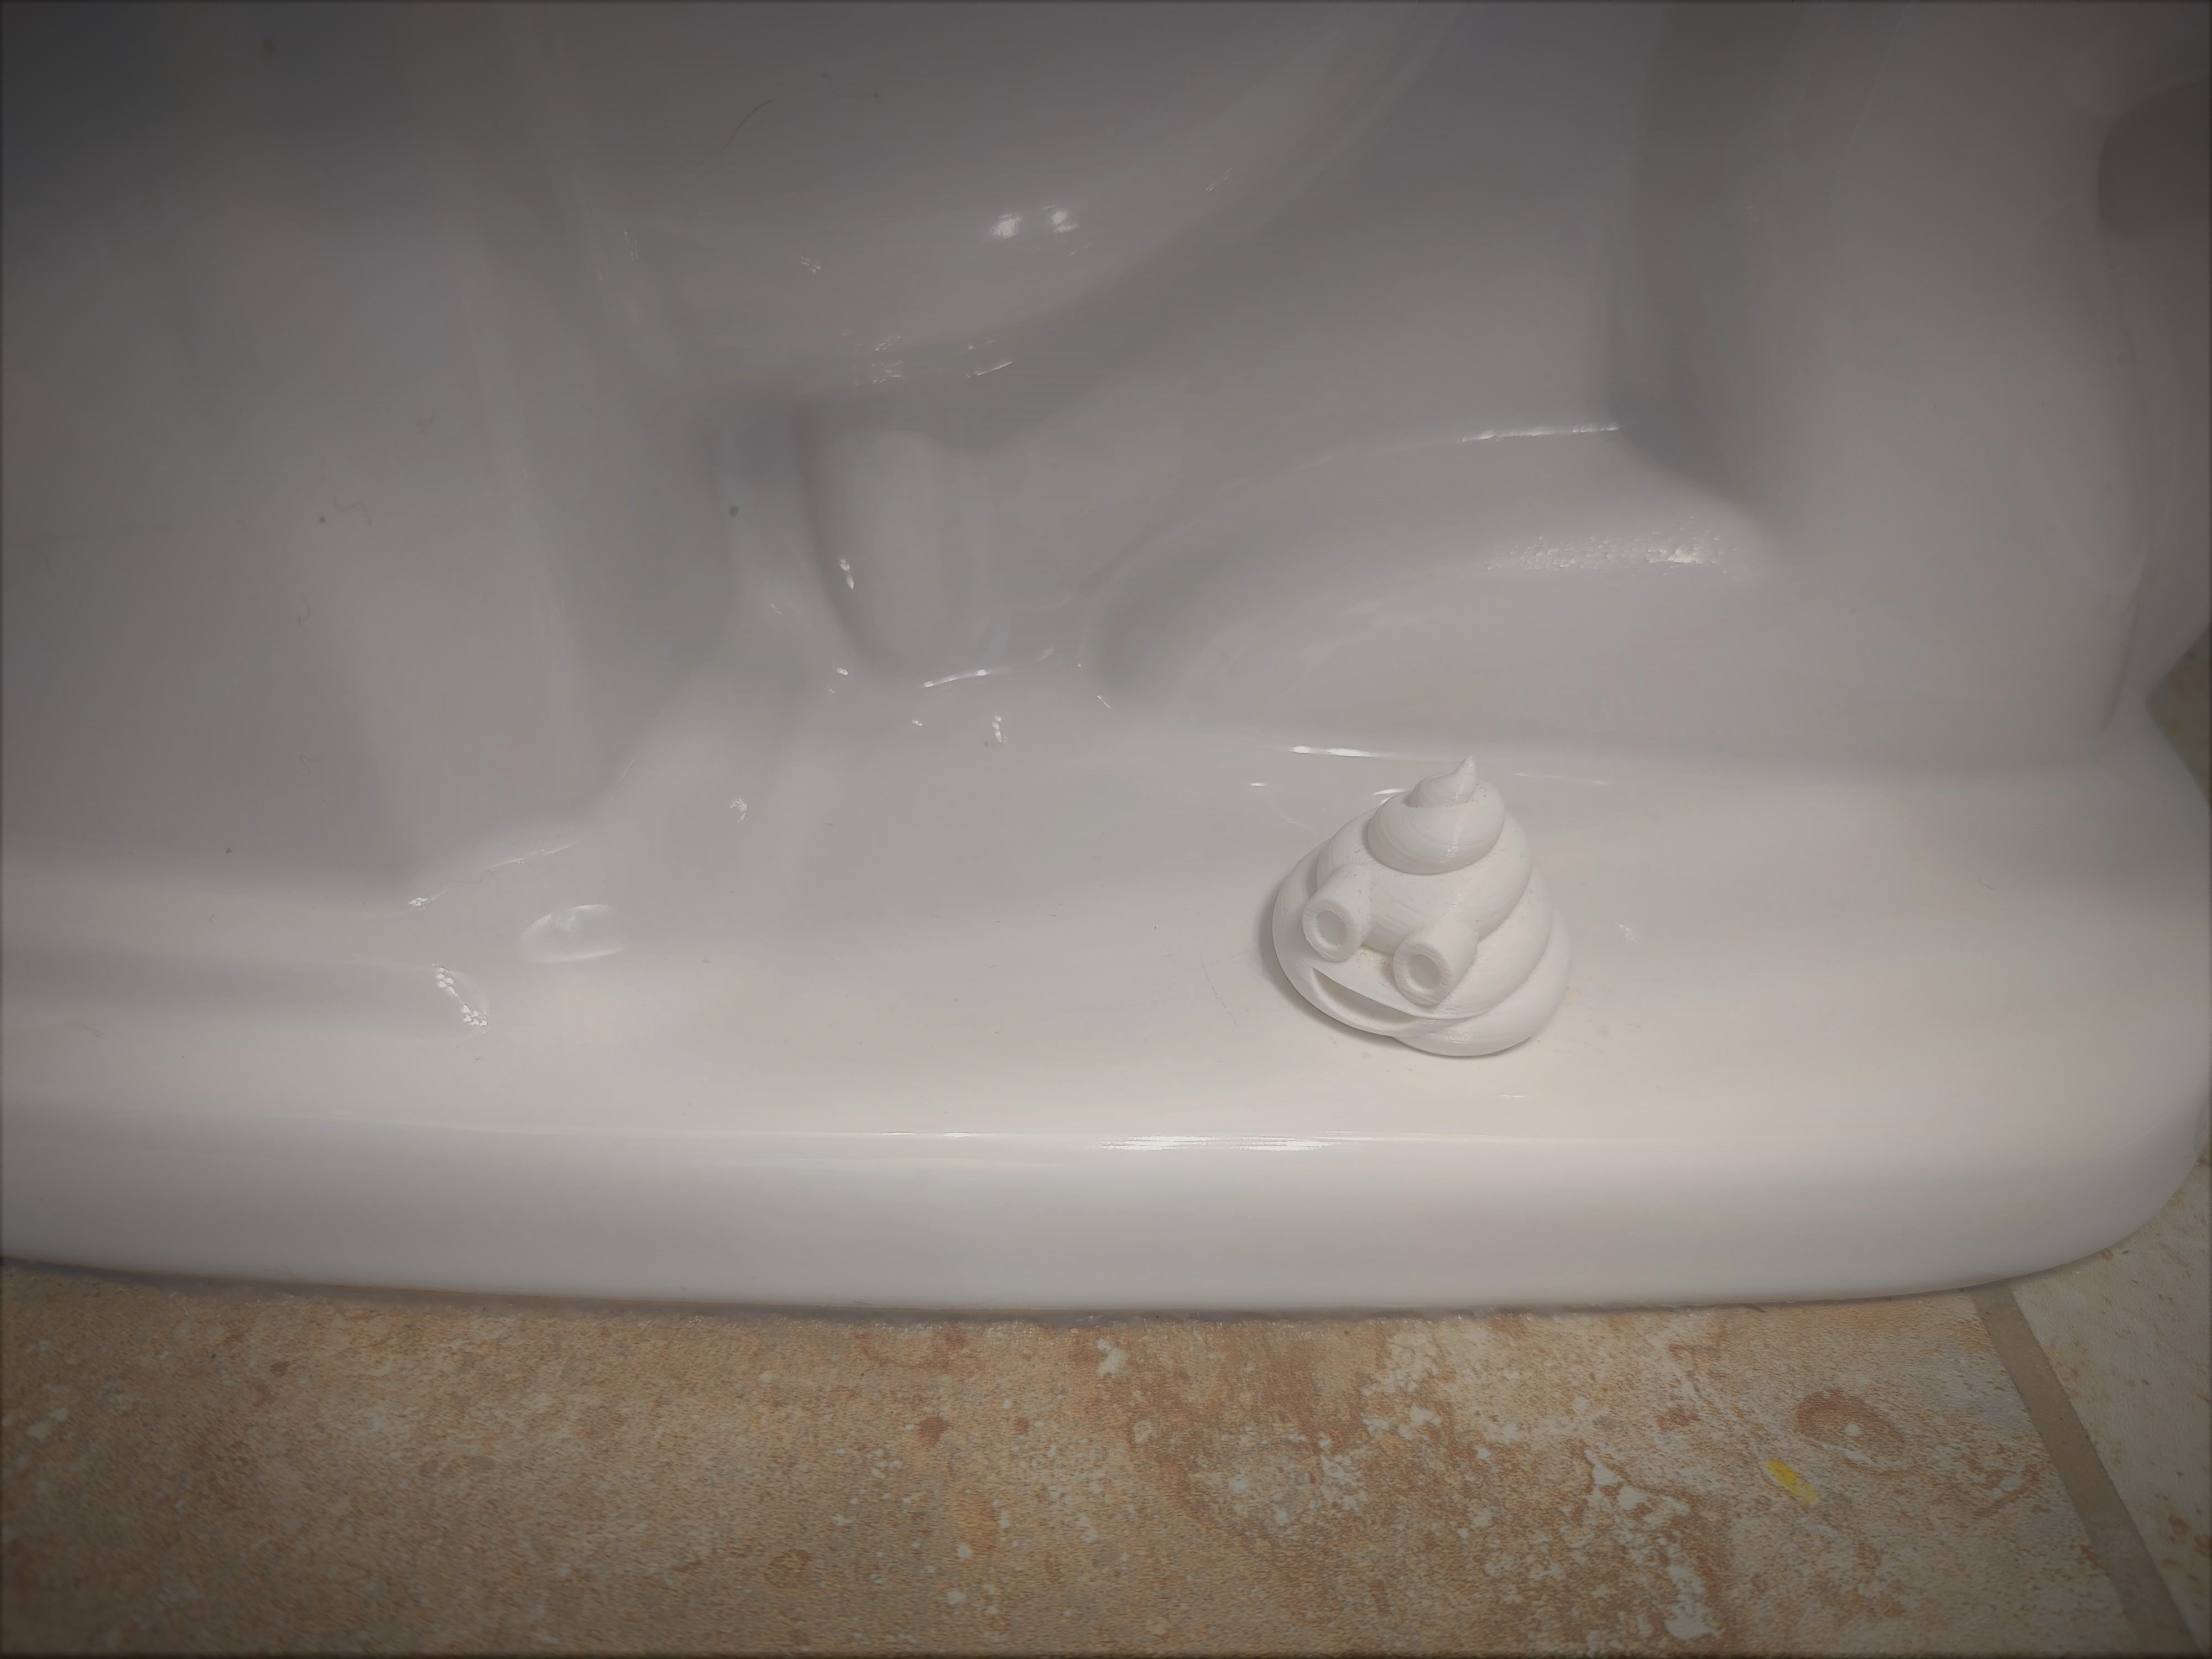 Toilet stud cover - poop emoji